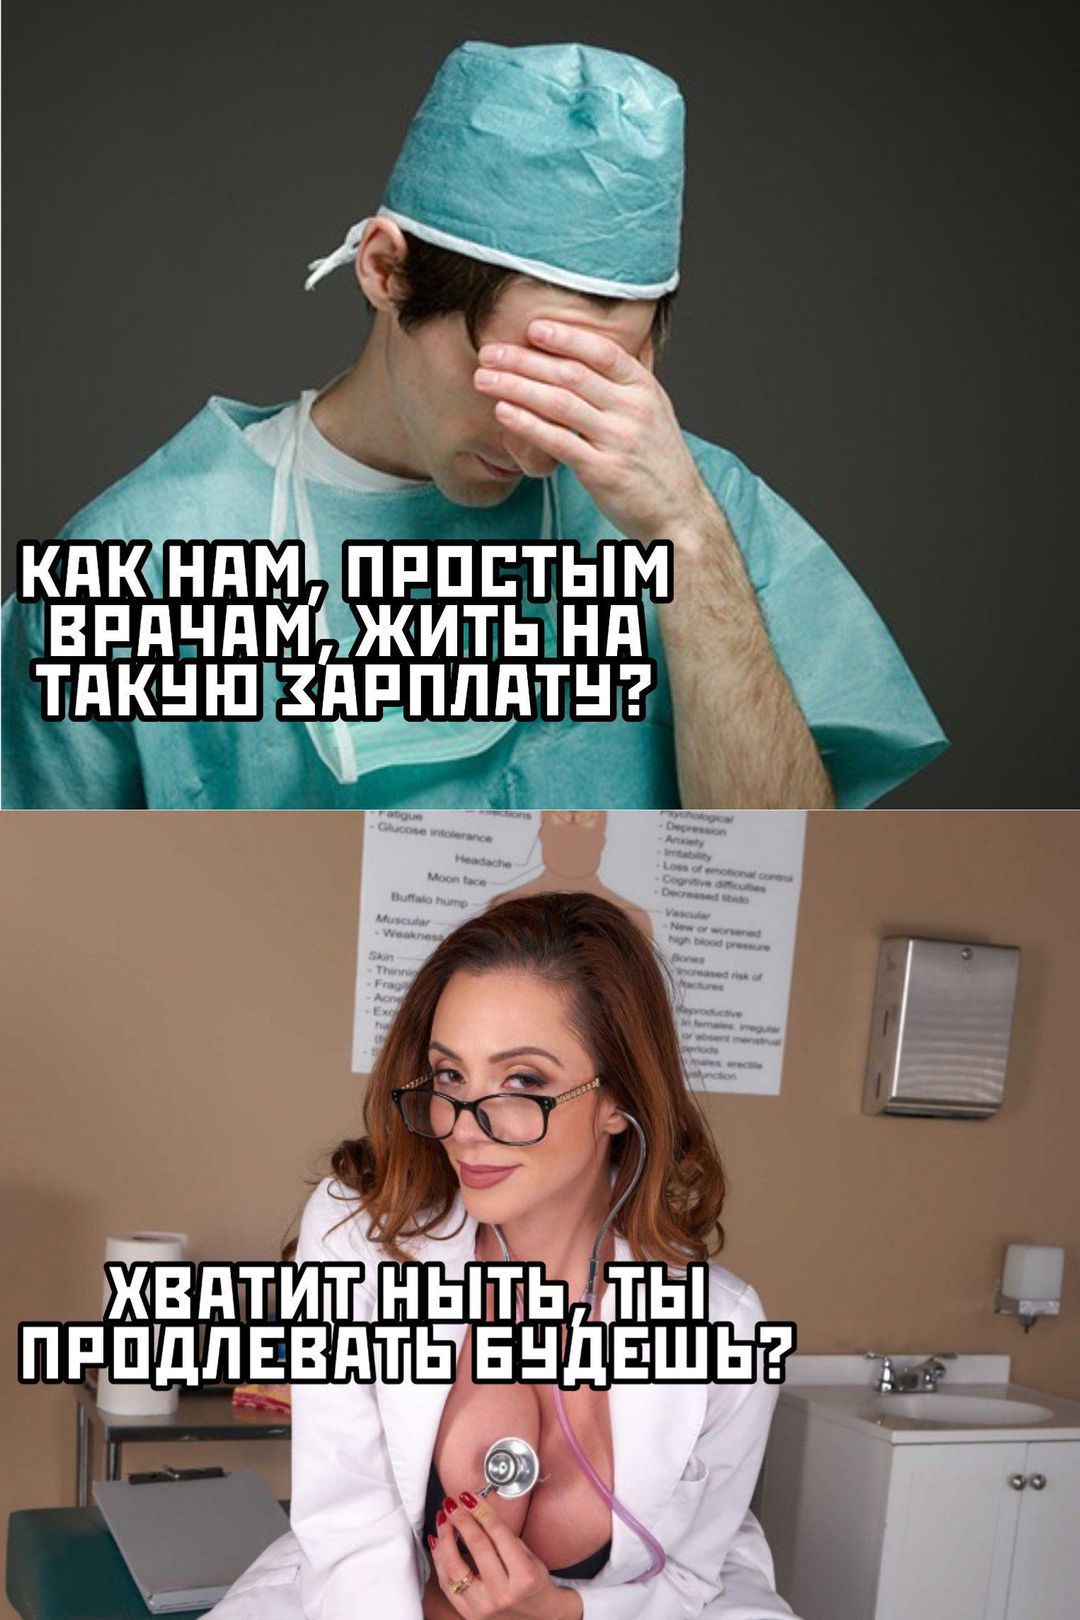 Медицинские мемы